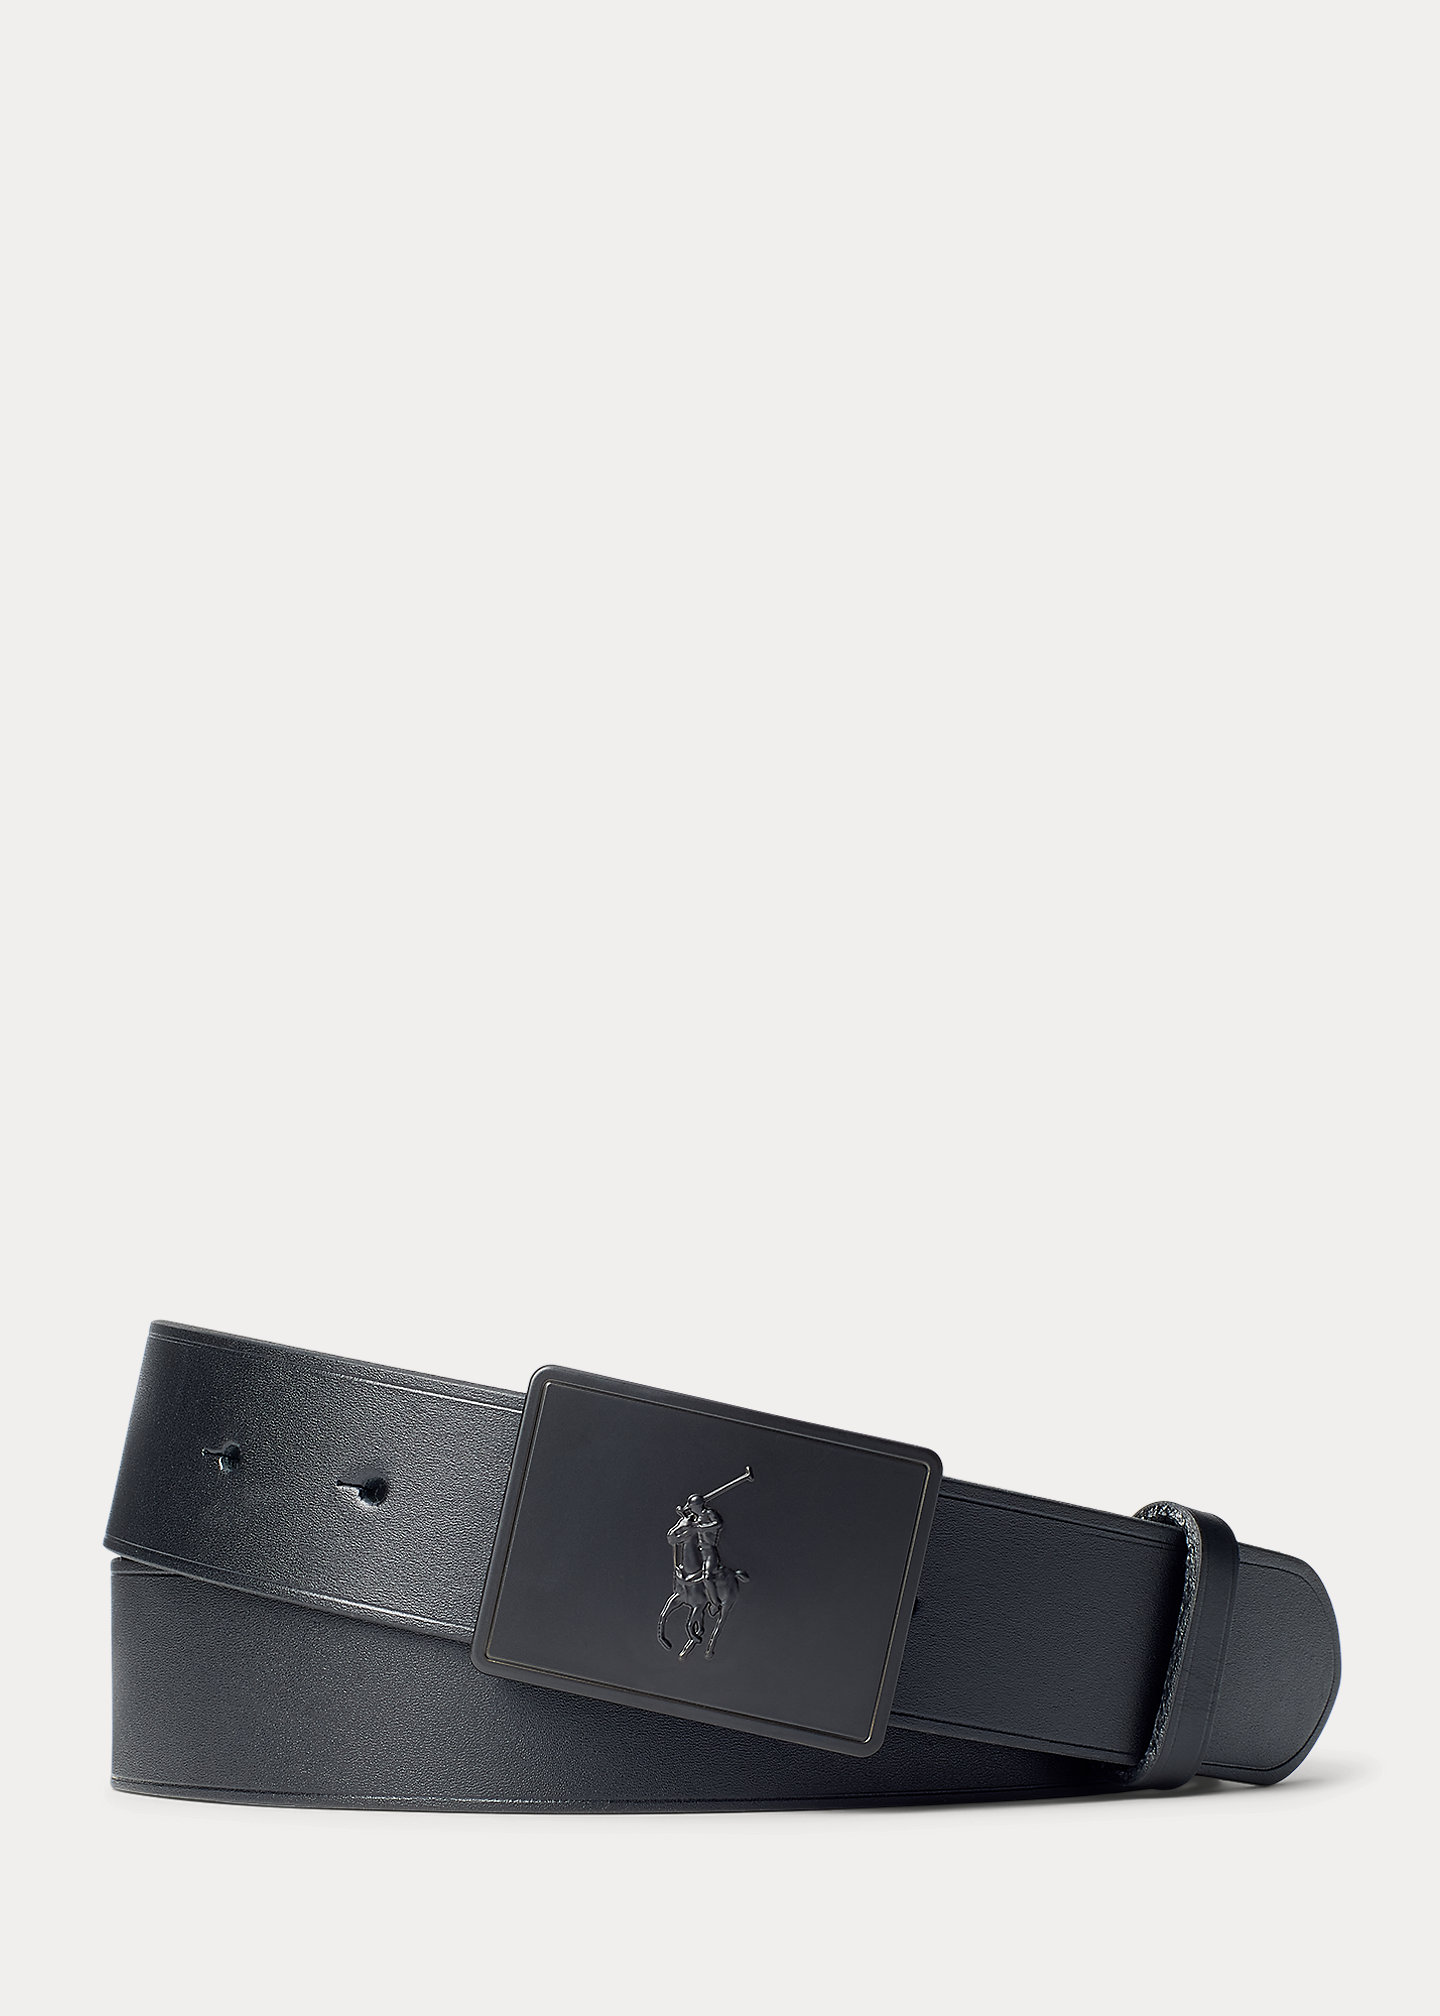 Pony Plaque Leather Belt